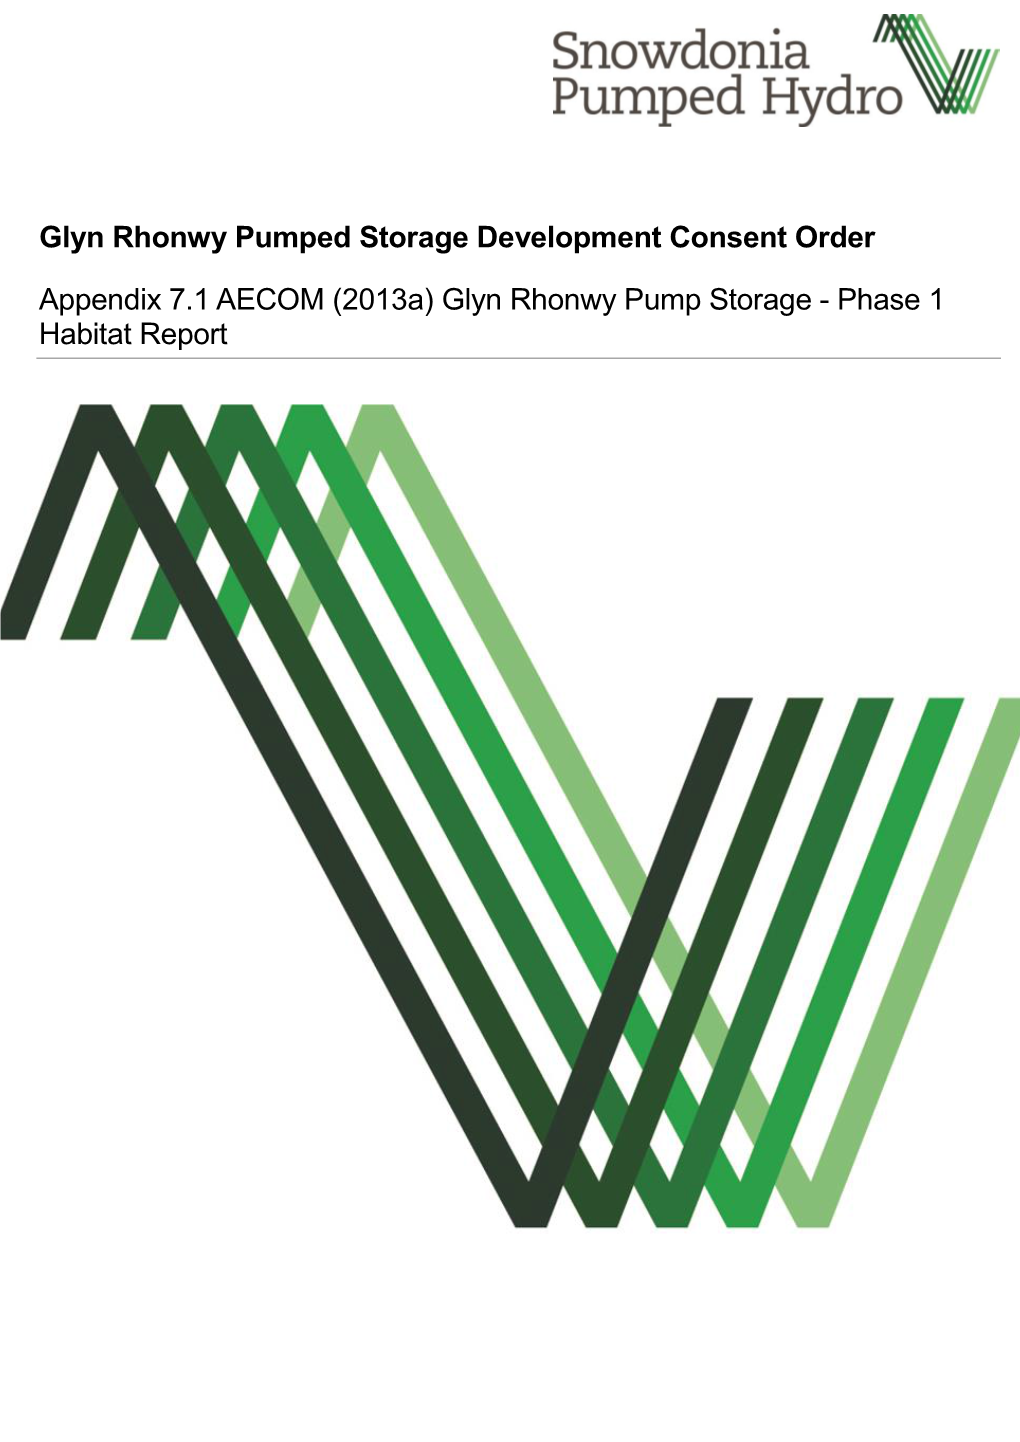 Glyn Rhonwy Pump Storage - Phase 1 Habitat Report